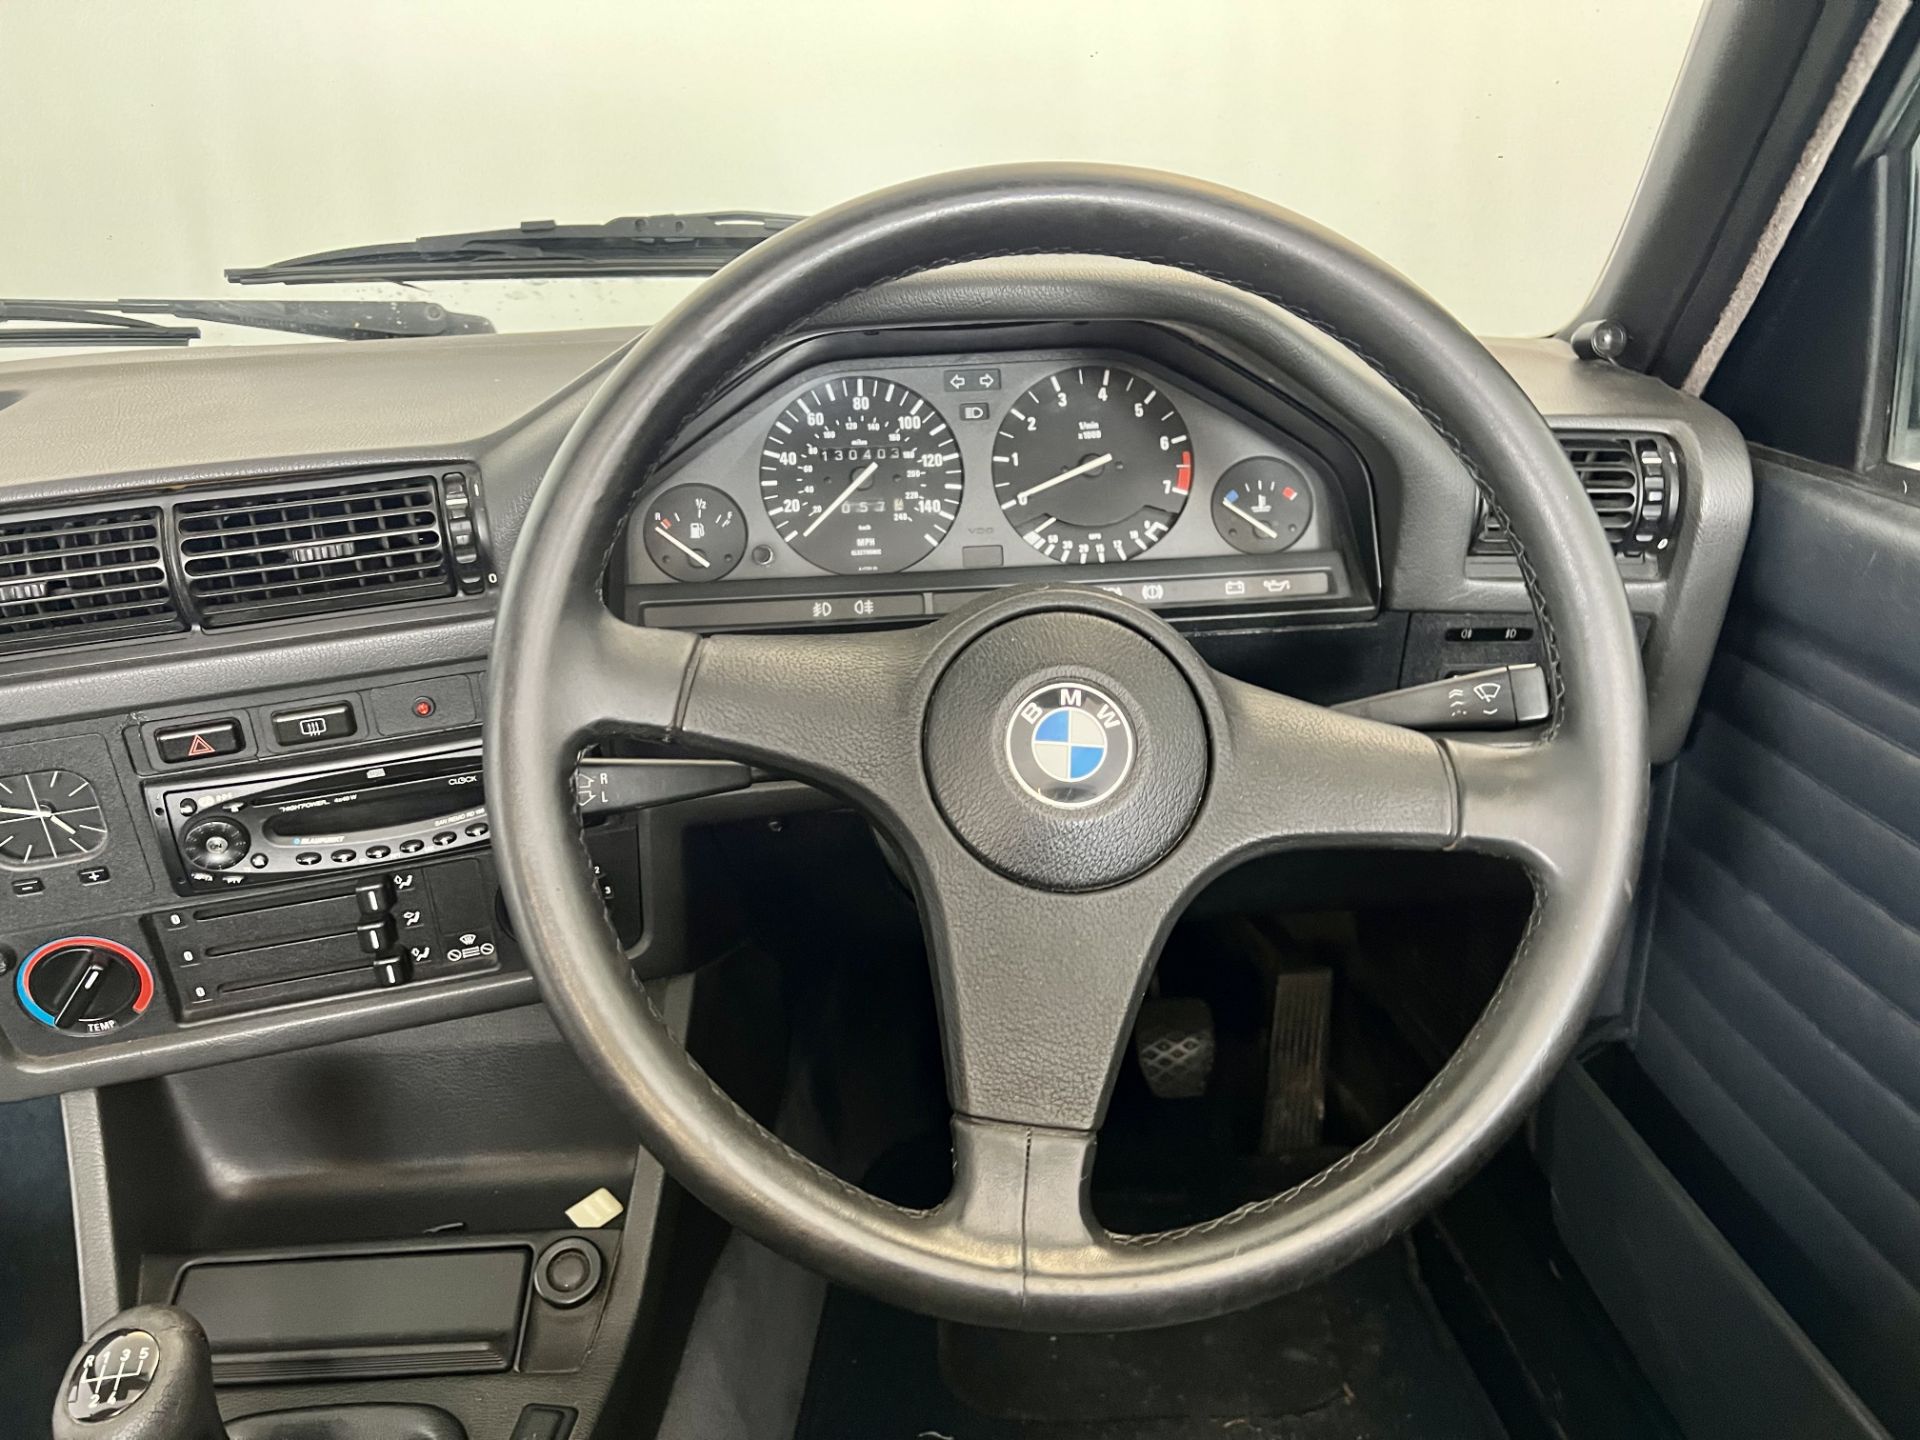 BMW 325i Cabriolet - Image 26 of 32